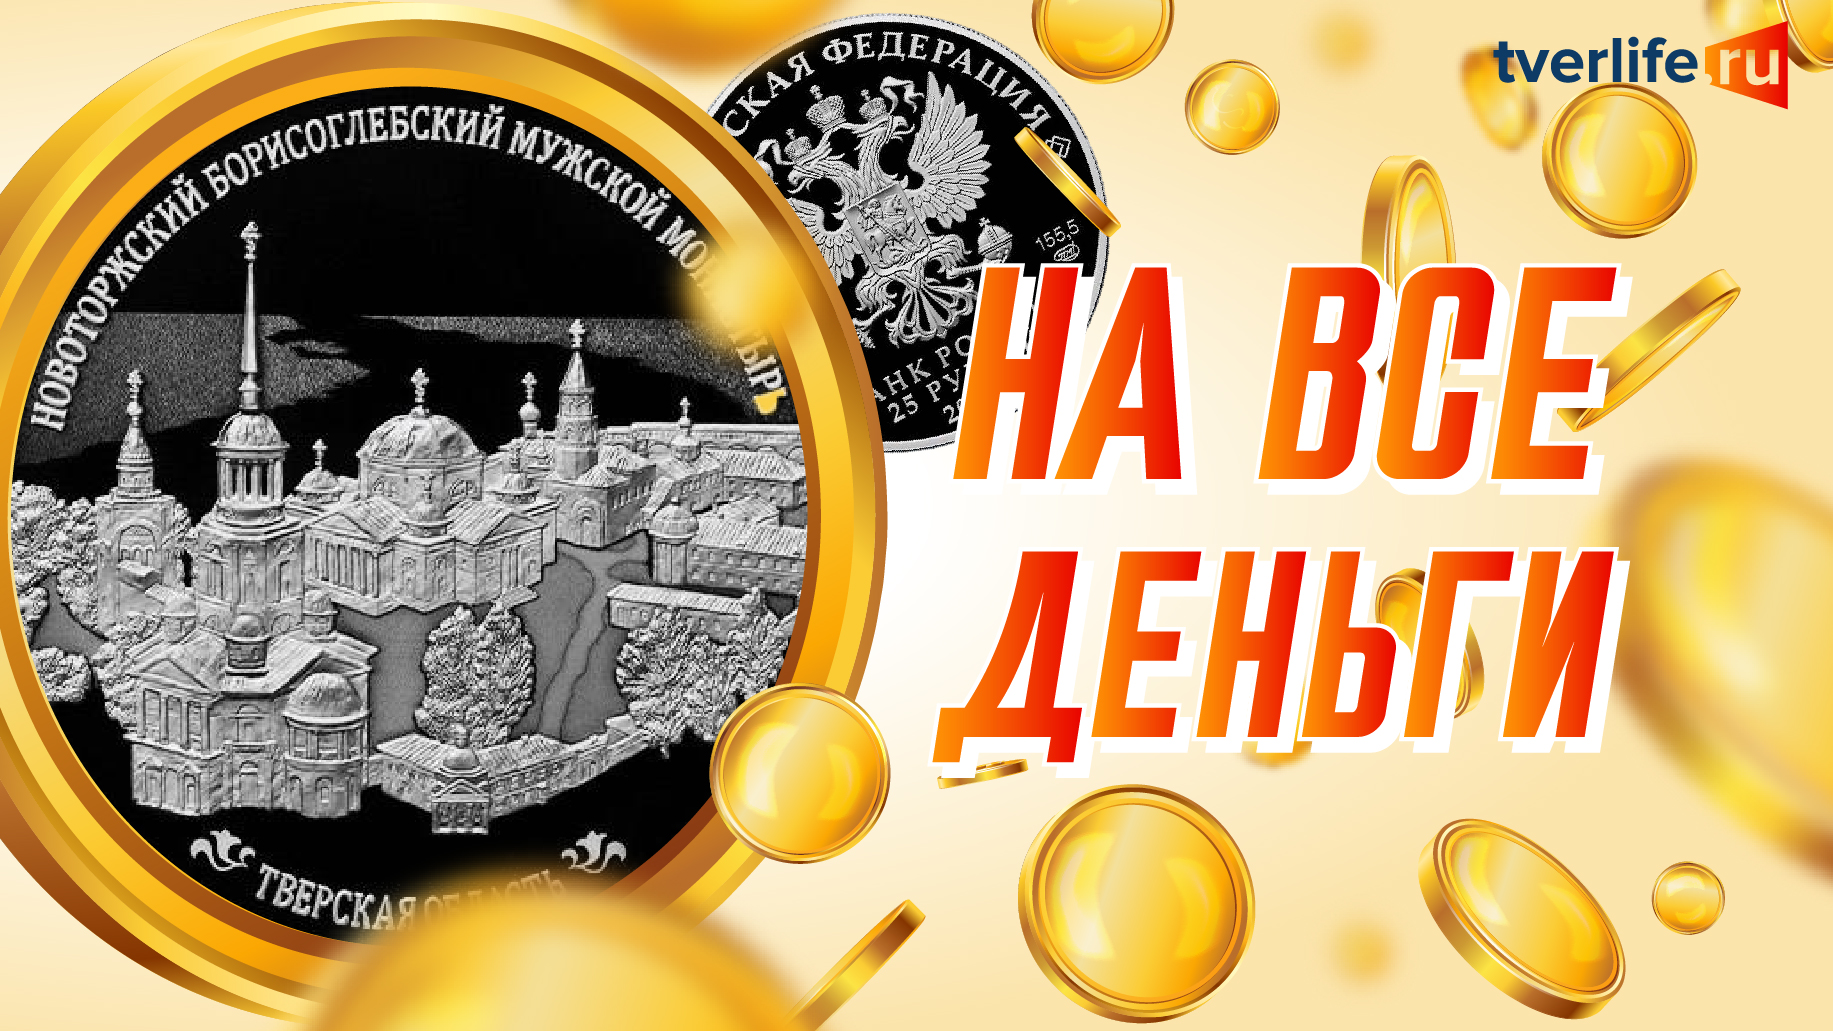 На все деньги: Новоторжский Борисоглебский мужской монастырь украсил редкую коллекционную монету